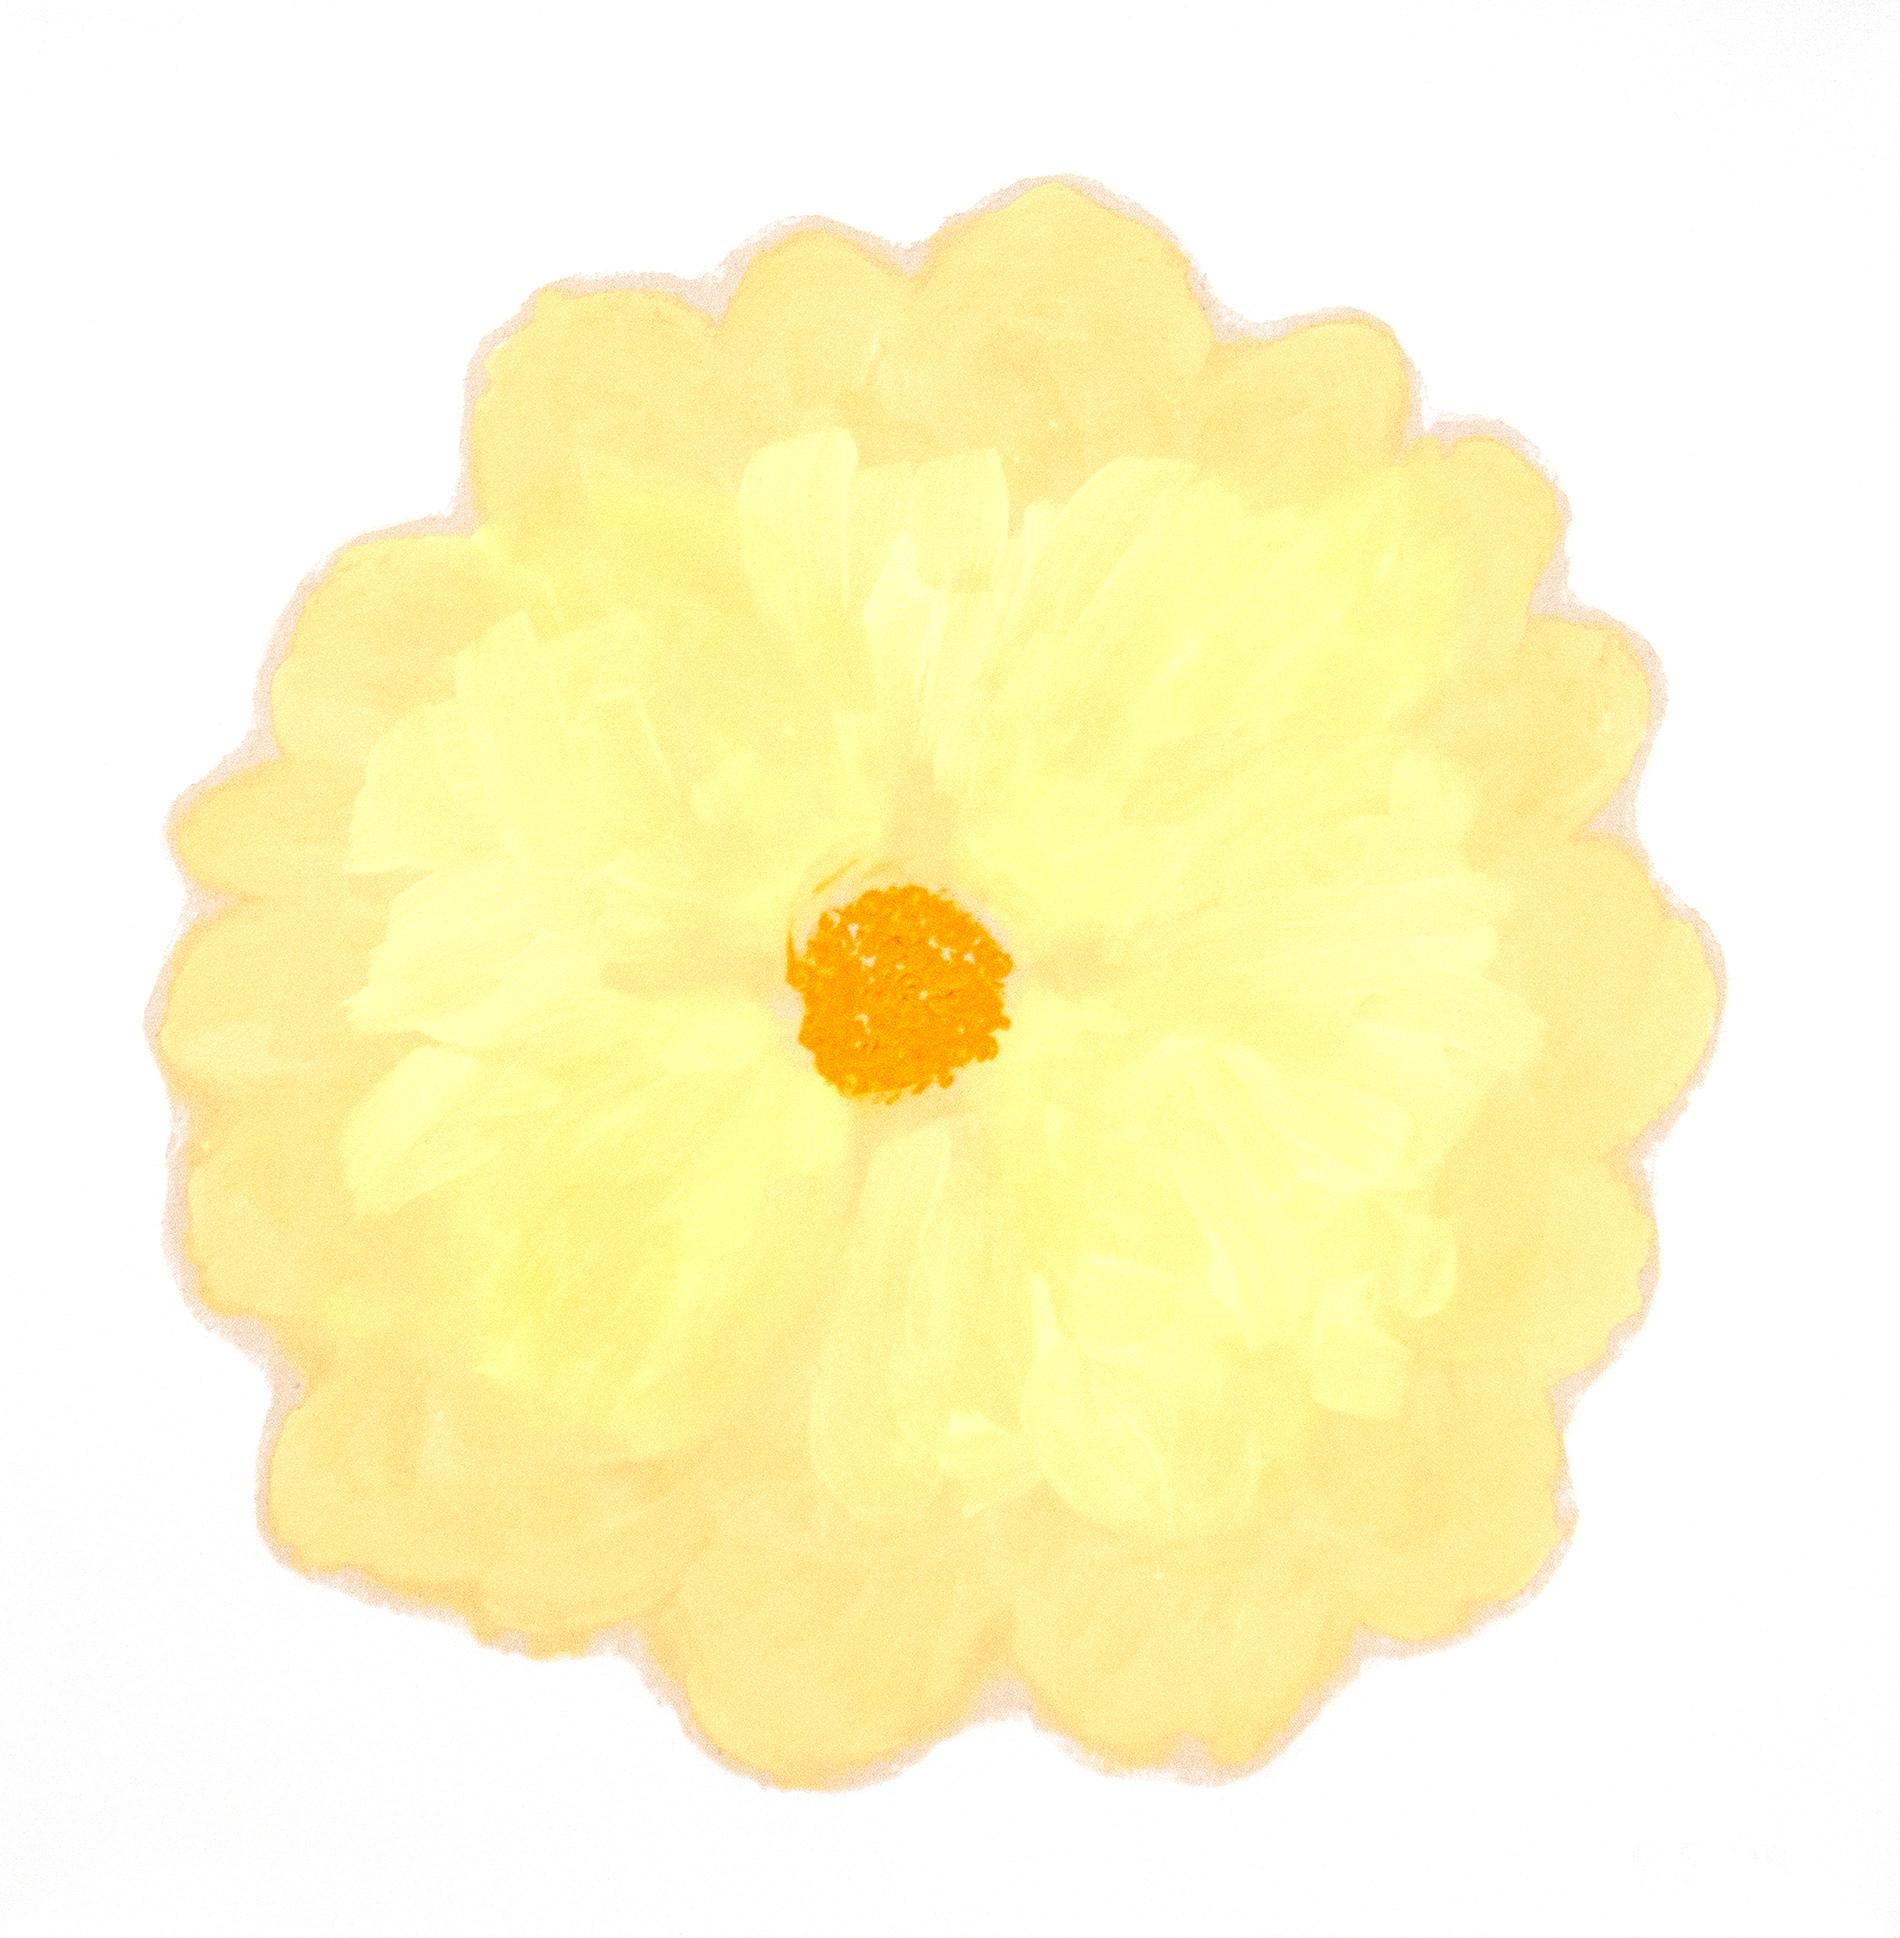 Figurative Painting Pat Service - Blossom Pale - coloré, expressif, floral abstrait, acrylique sur toile